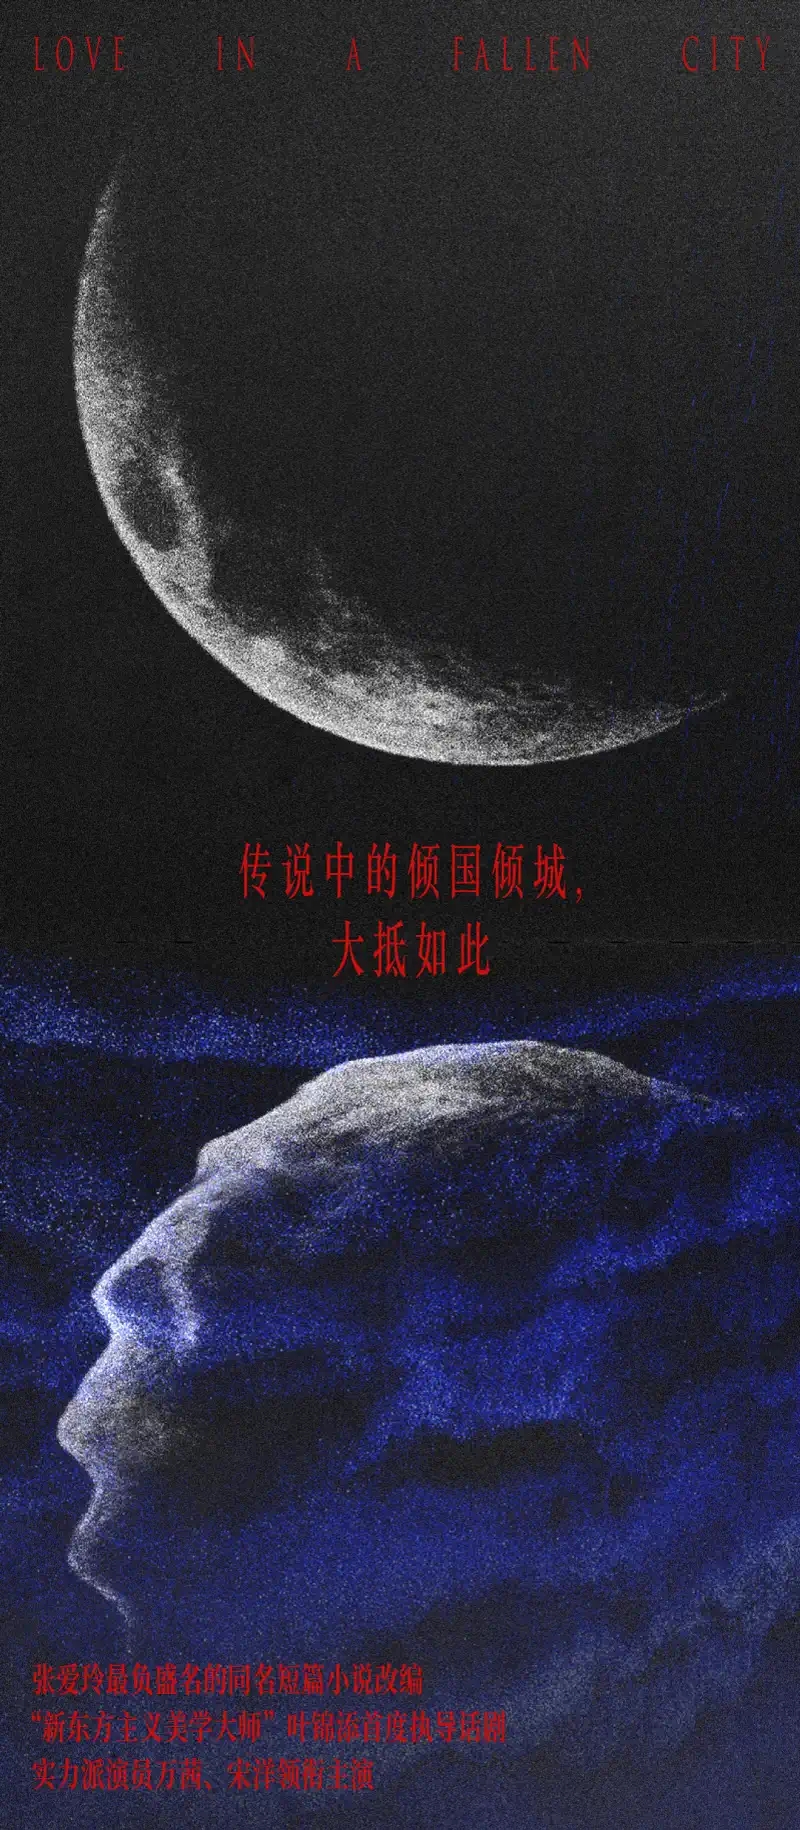 2021叶锦添导演·万茜、宋洋主演舞台剧《倾城之恋》-杭州站